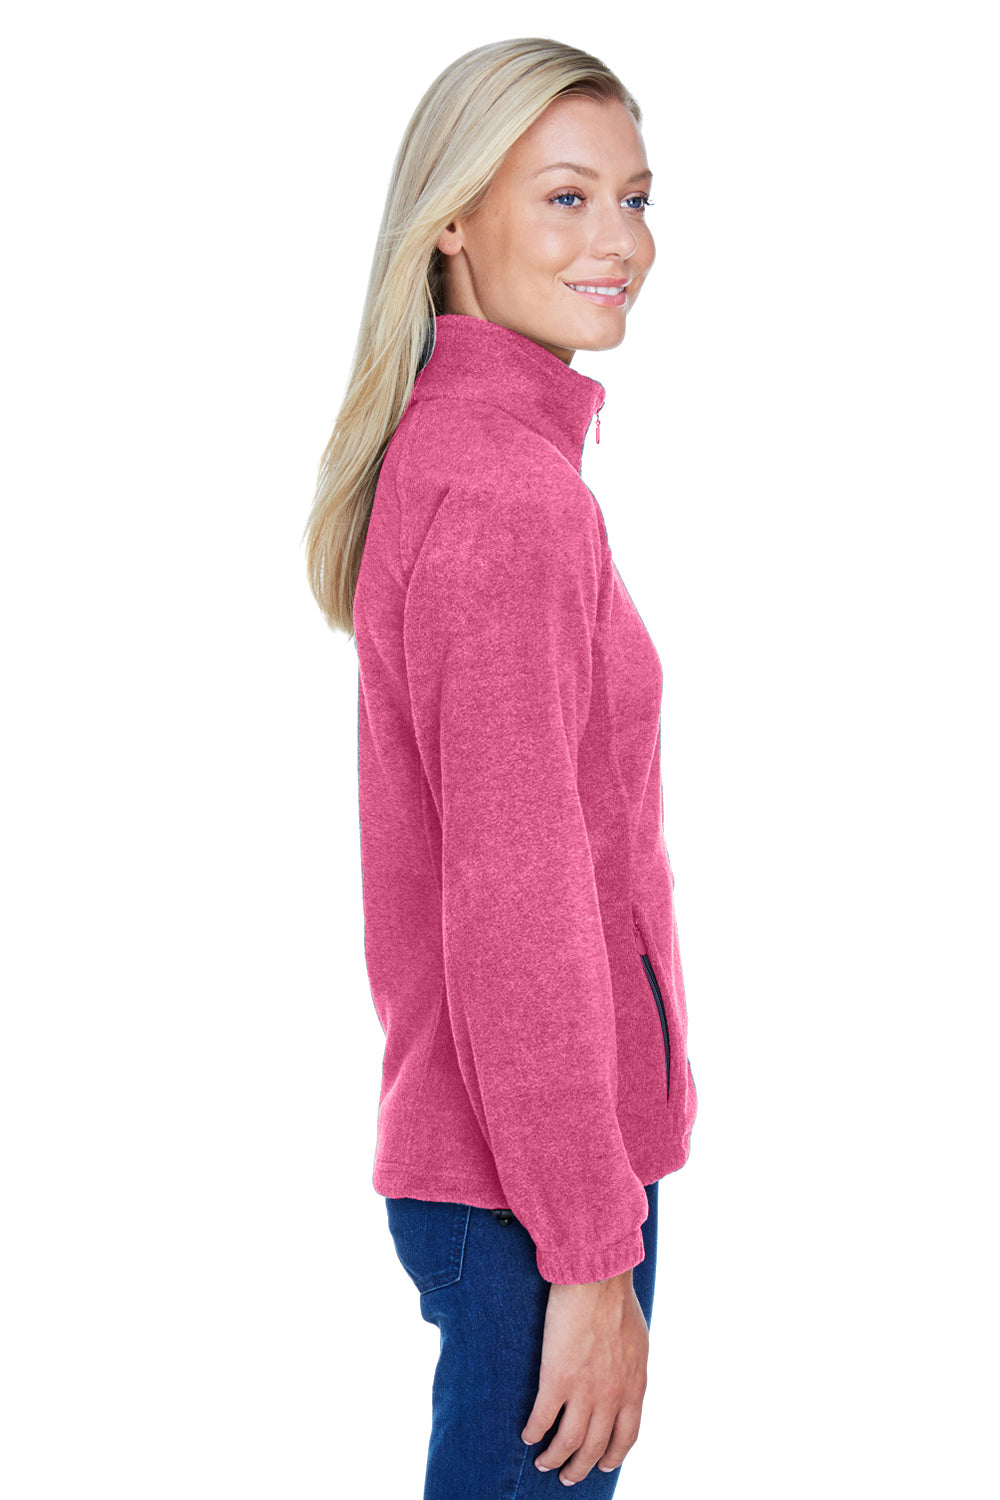 Harriton M990W Womens Full Zip Fleece Jacket Charity Pink Side